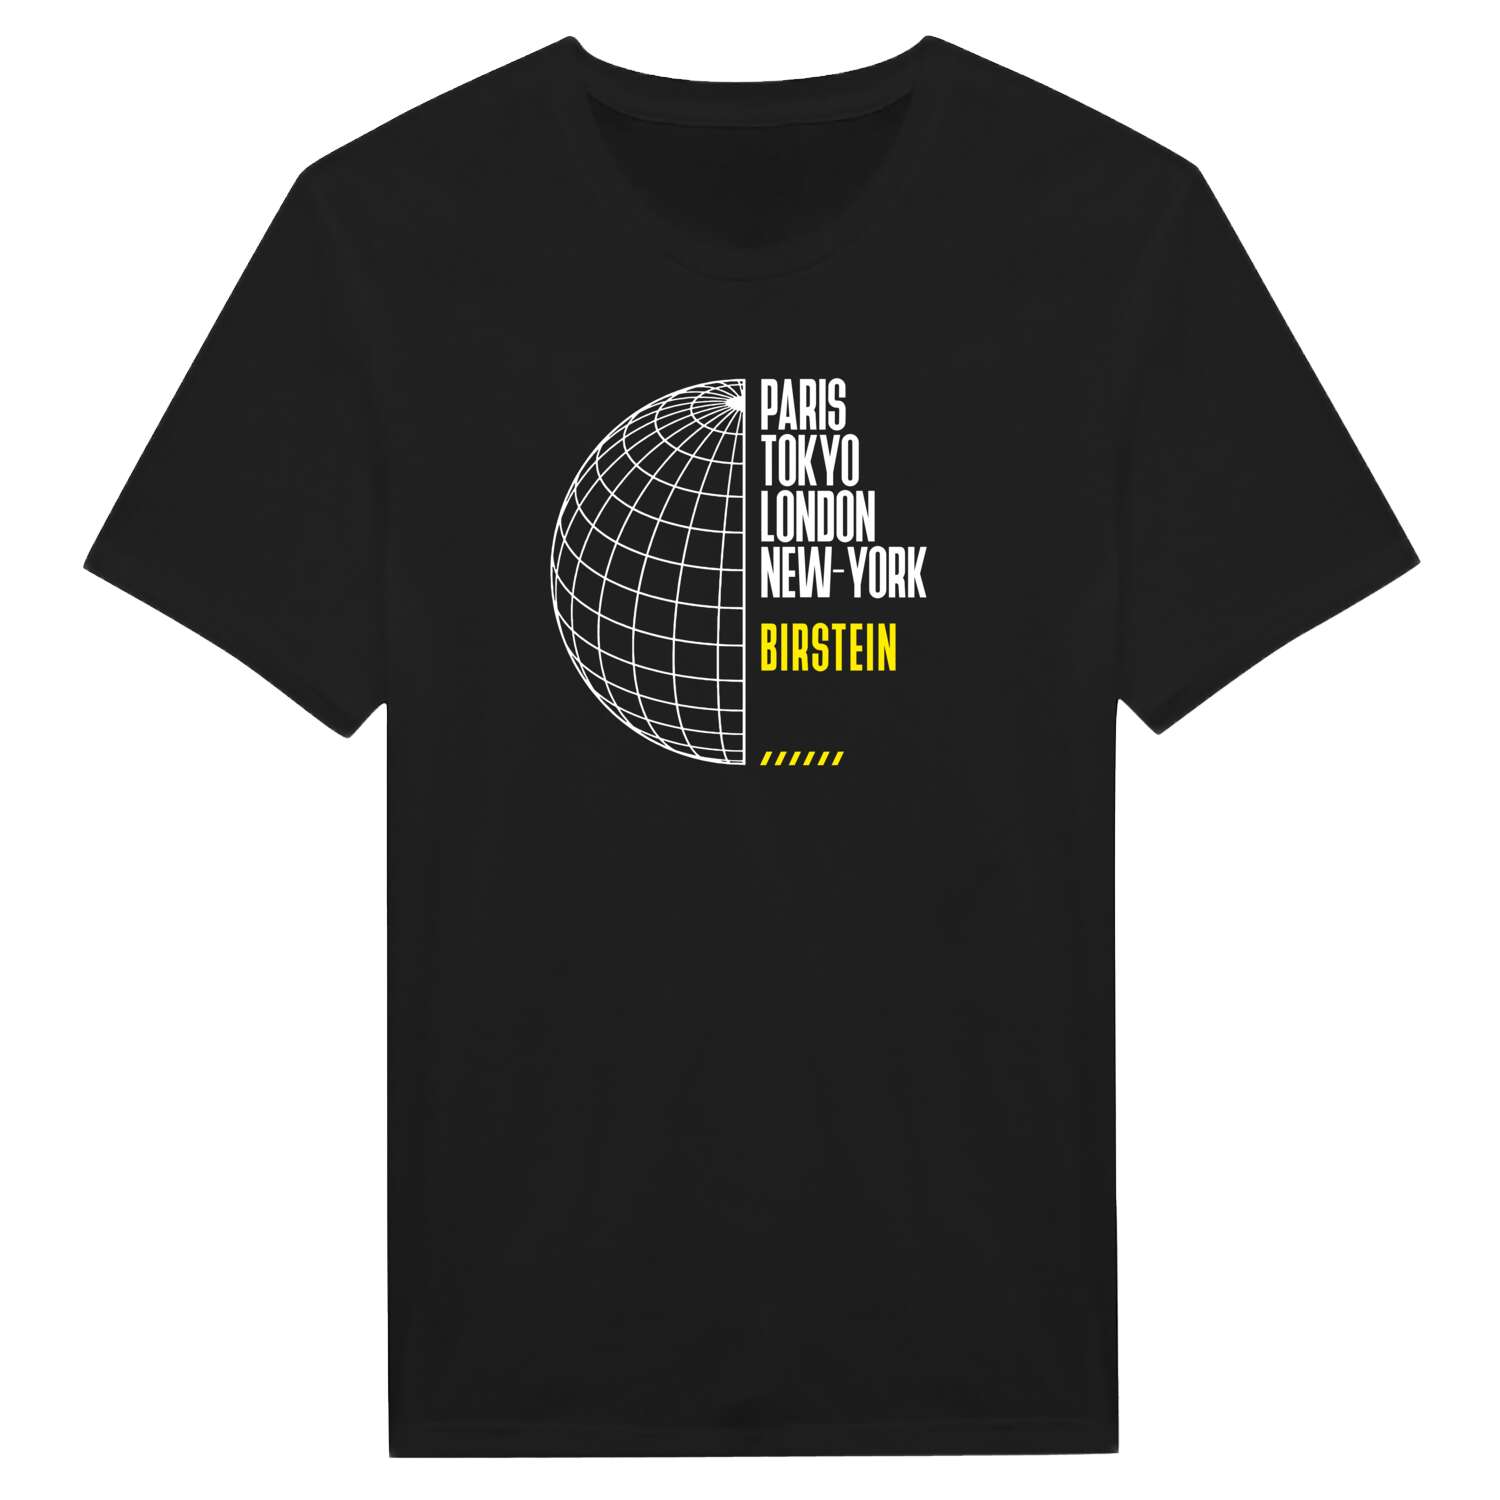 Birstein T-Shirt »Paris Tokyo London«